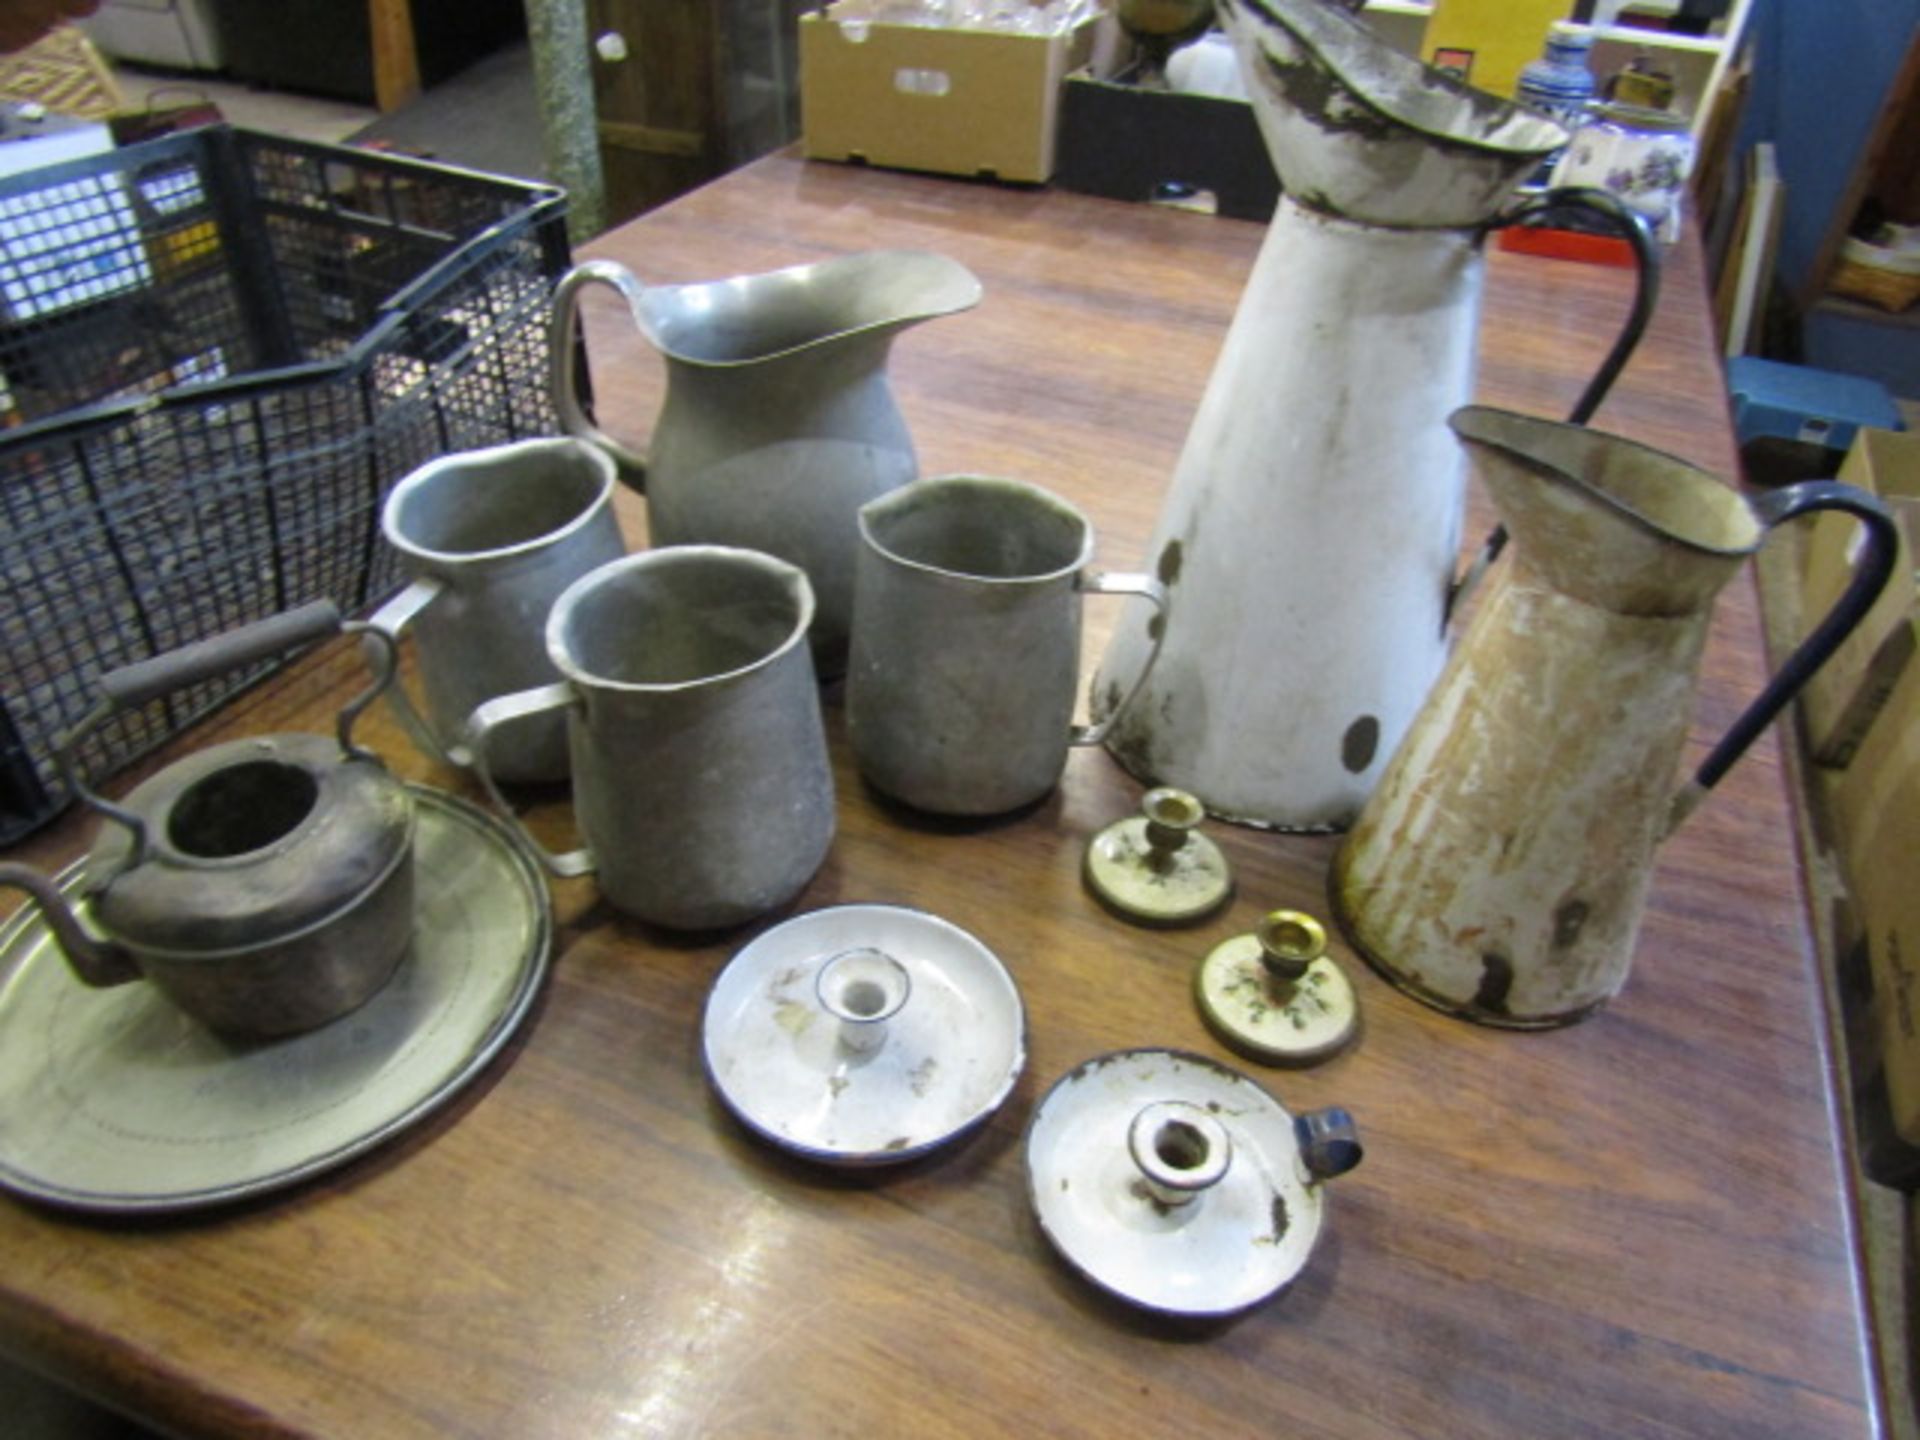 Enamel ware and metal jugs